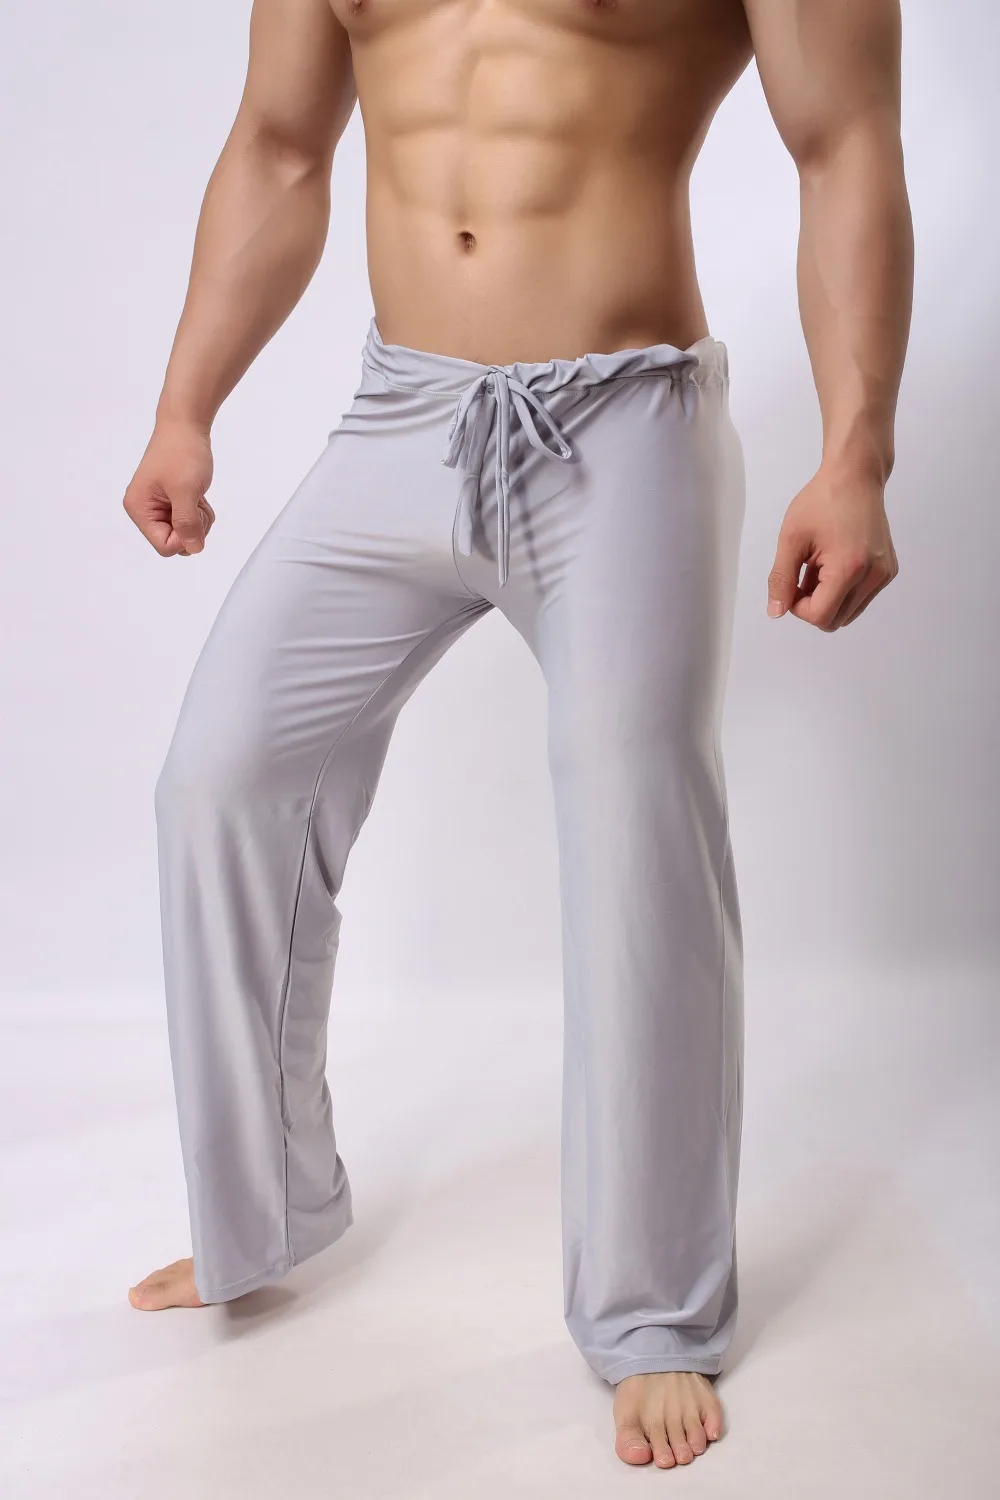 Мужские хлопковые штаны для сна из чистого ледяного шелка без следов, мягкие сексуальные, популярные, дышащие штаны, эластичные, мужские, гомосексуальные, для мужчин, для геев